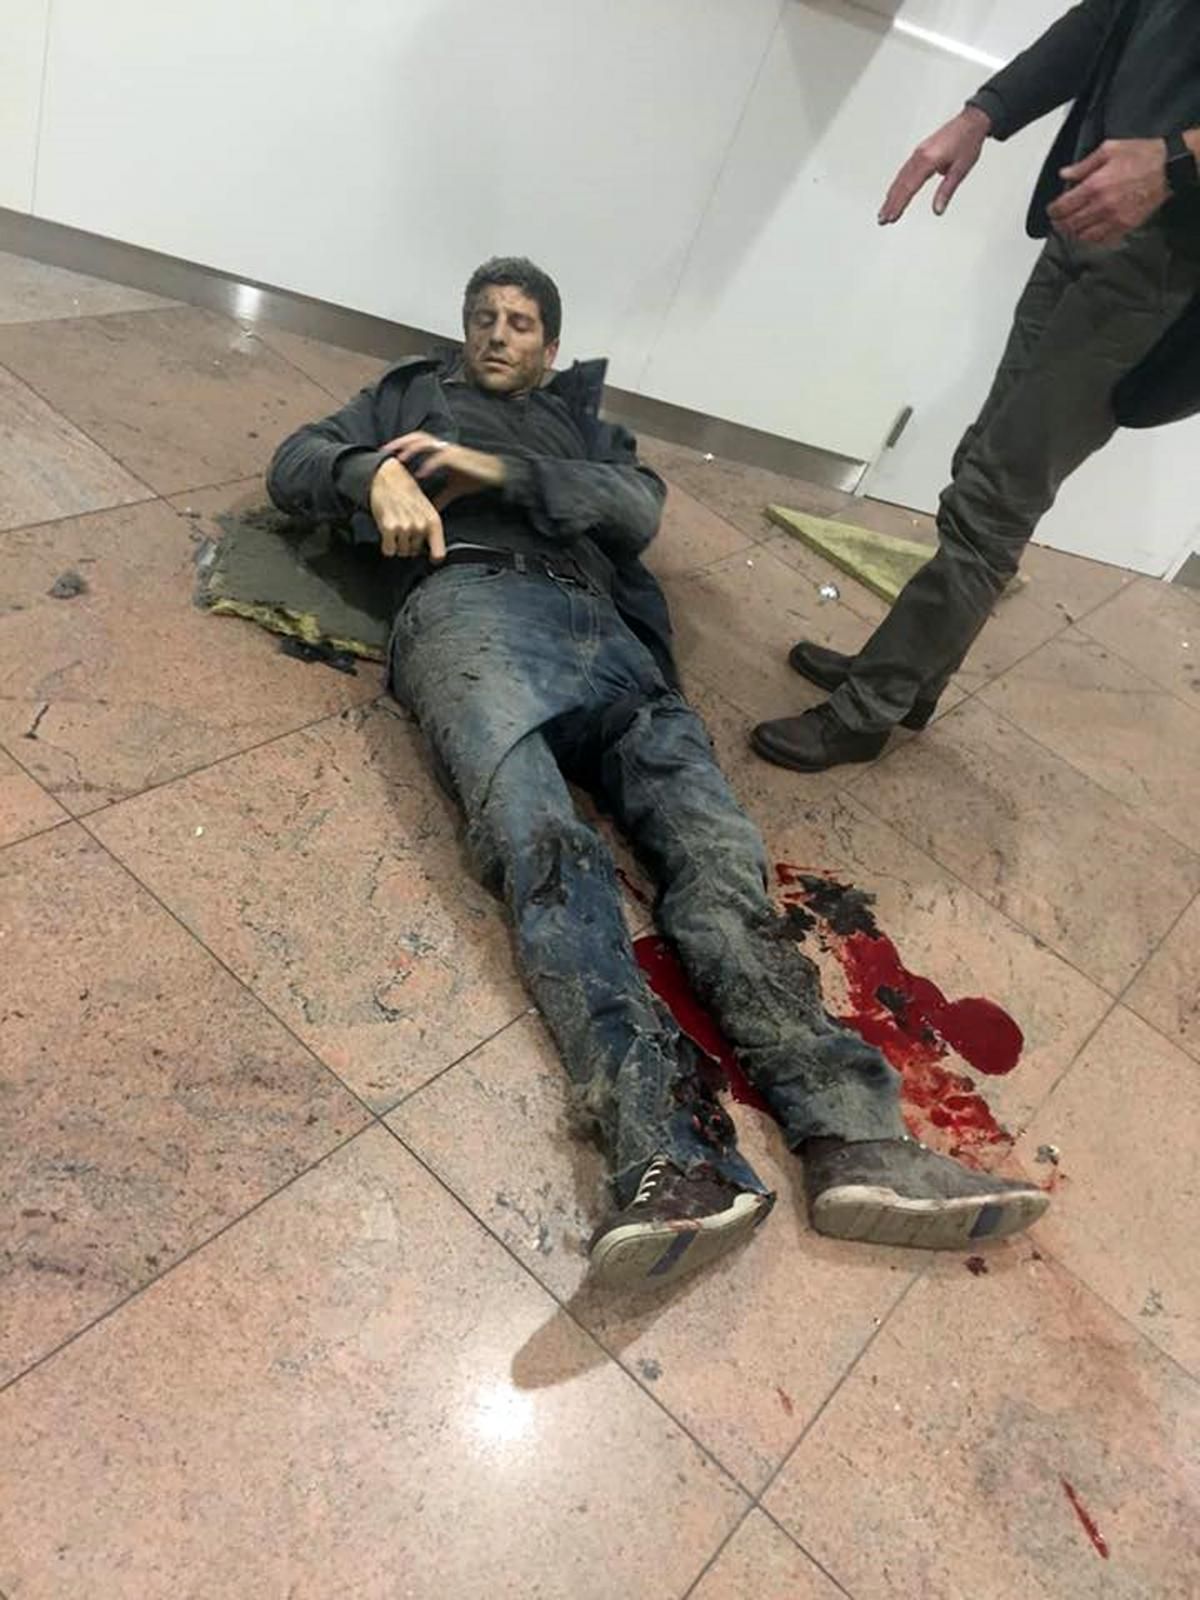 Cadena de atentados en Bruselas